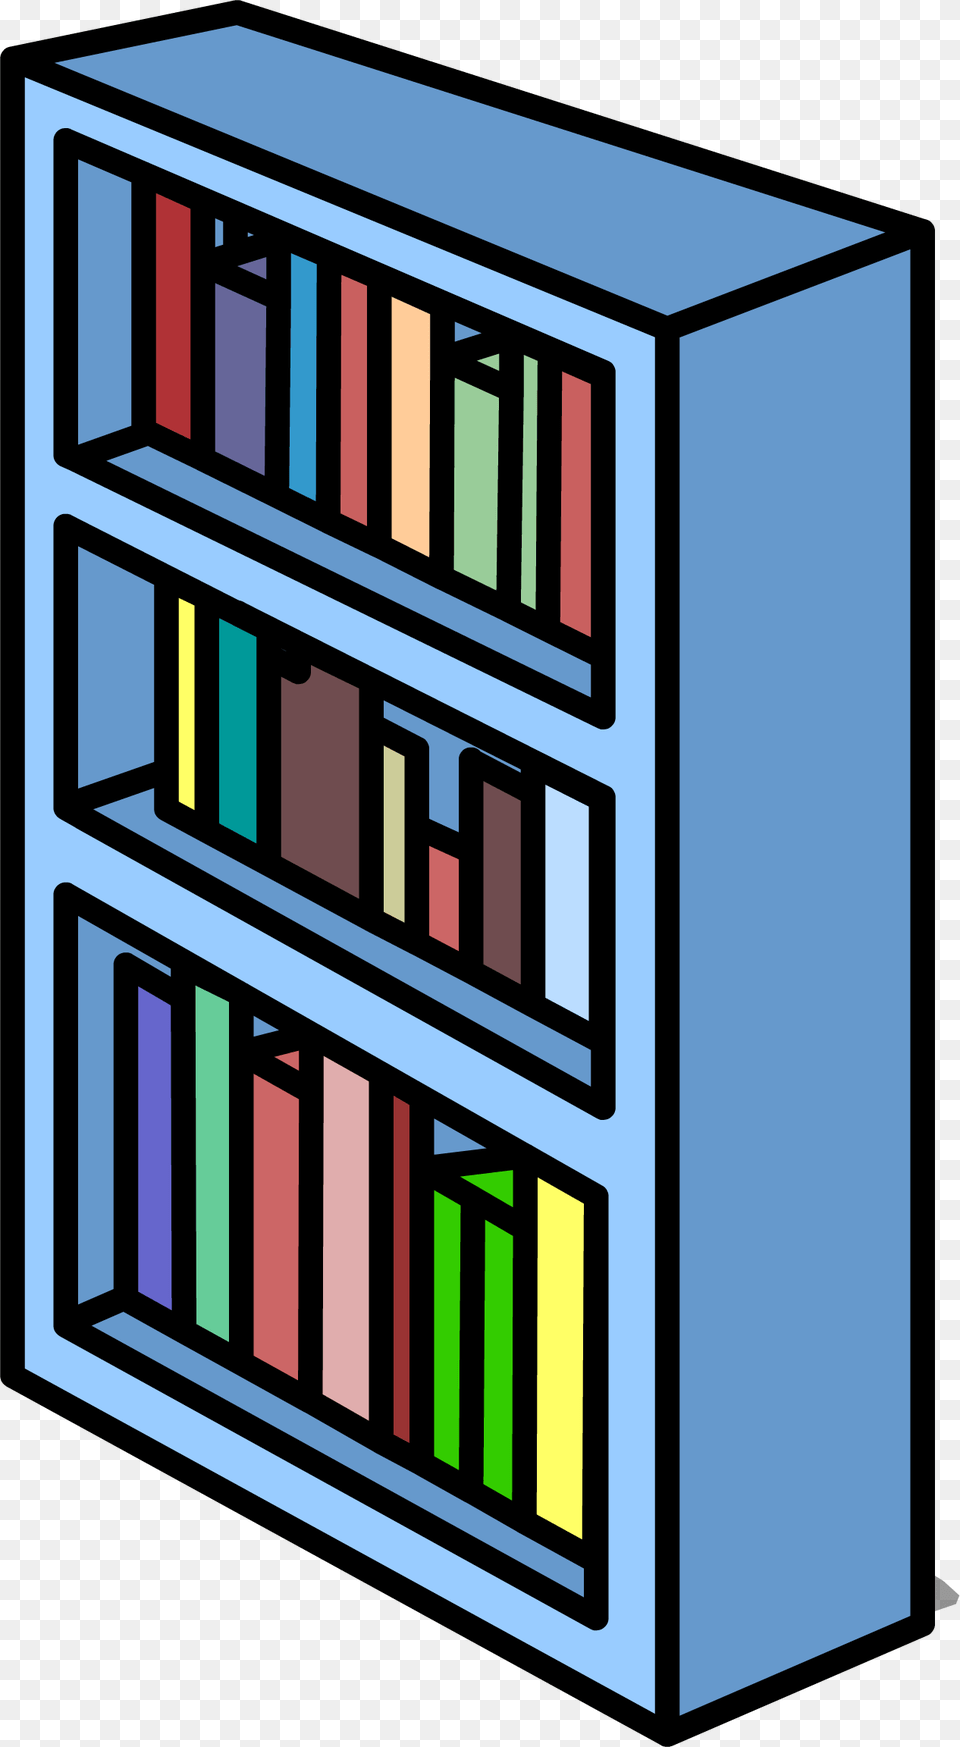 Blue Bookshelf Sprite 007 Bookshelf Sprite, Furniture, Gate, Bookcase, Book Png